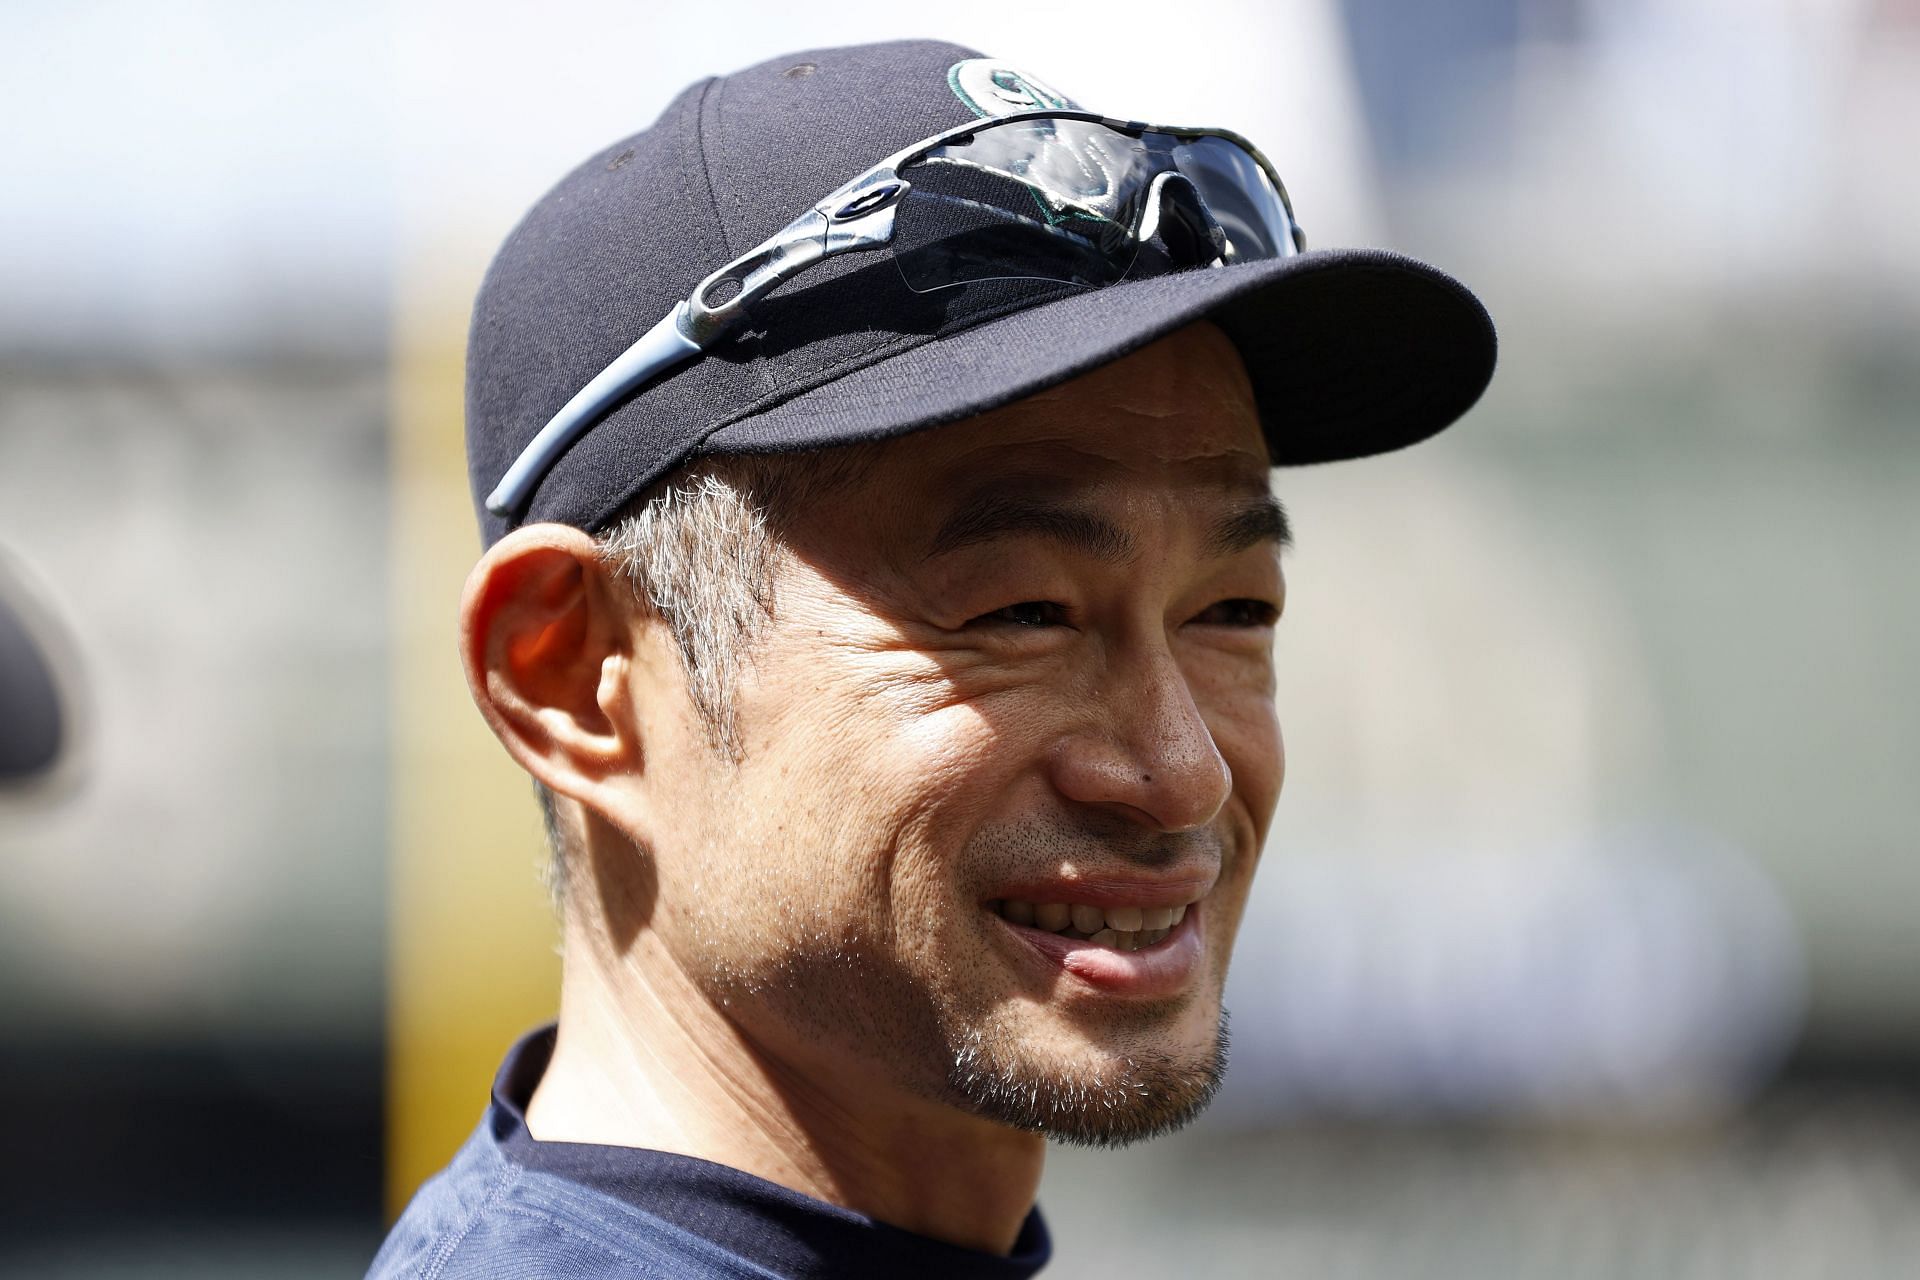 Seattle Mariners star Ichiro Suzuki